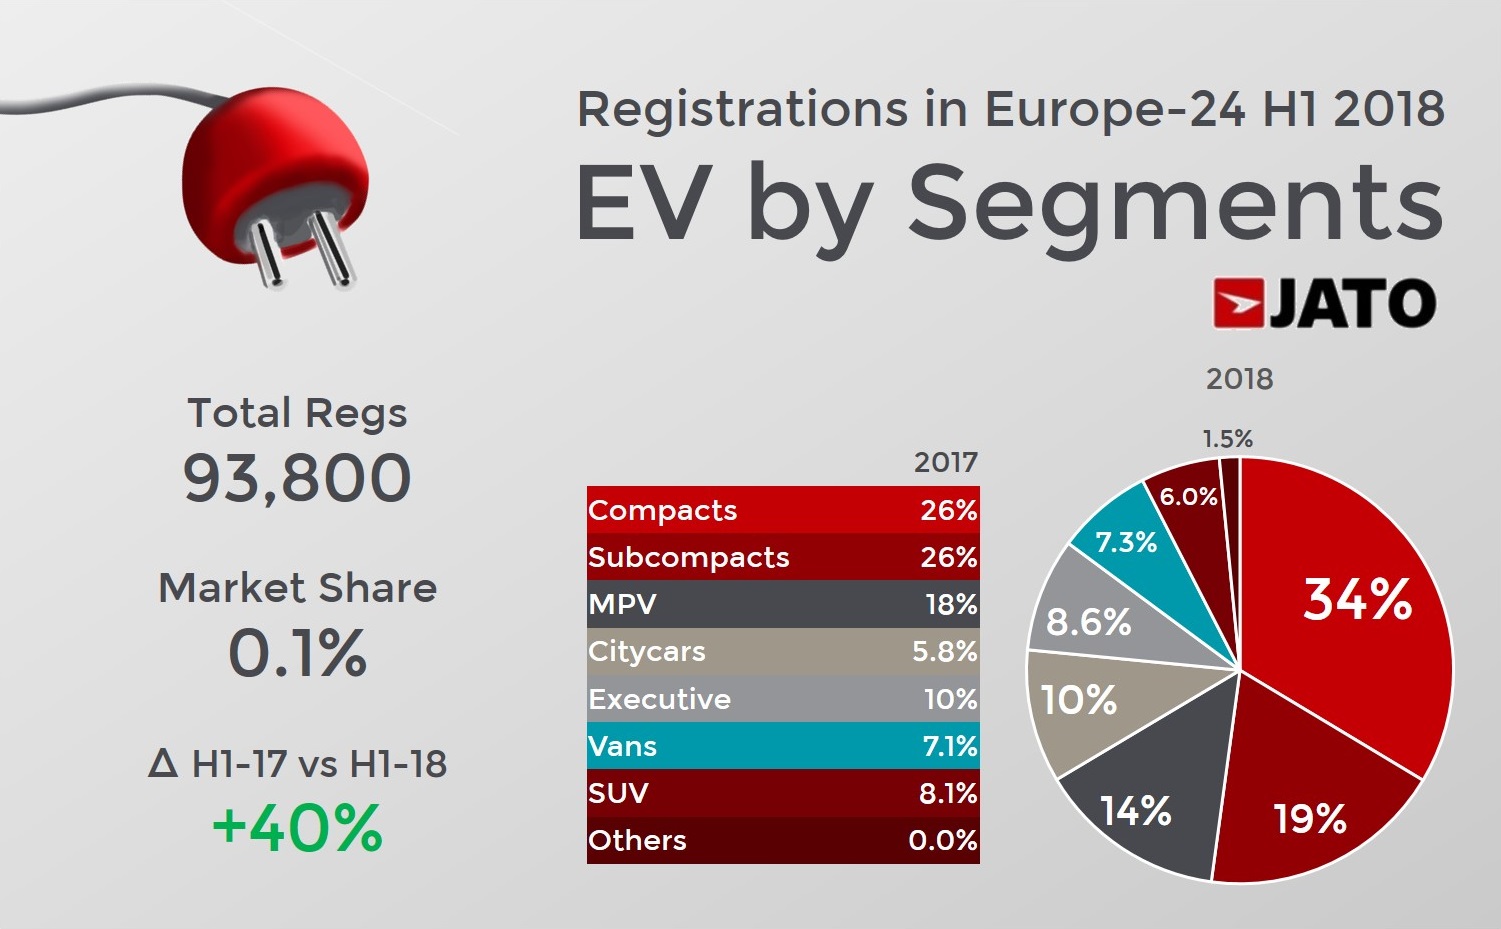 EV by segments - H1 2018 - Europe 24